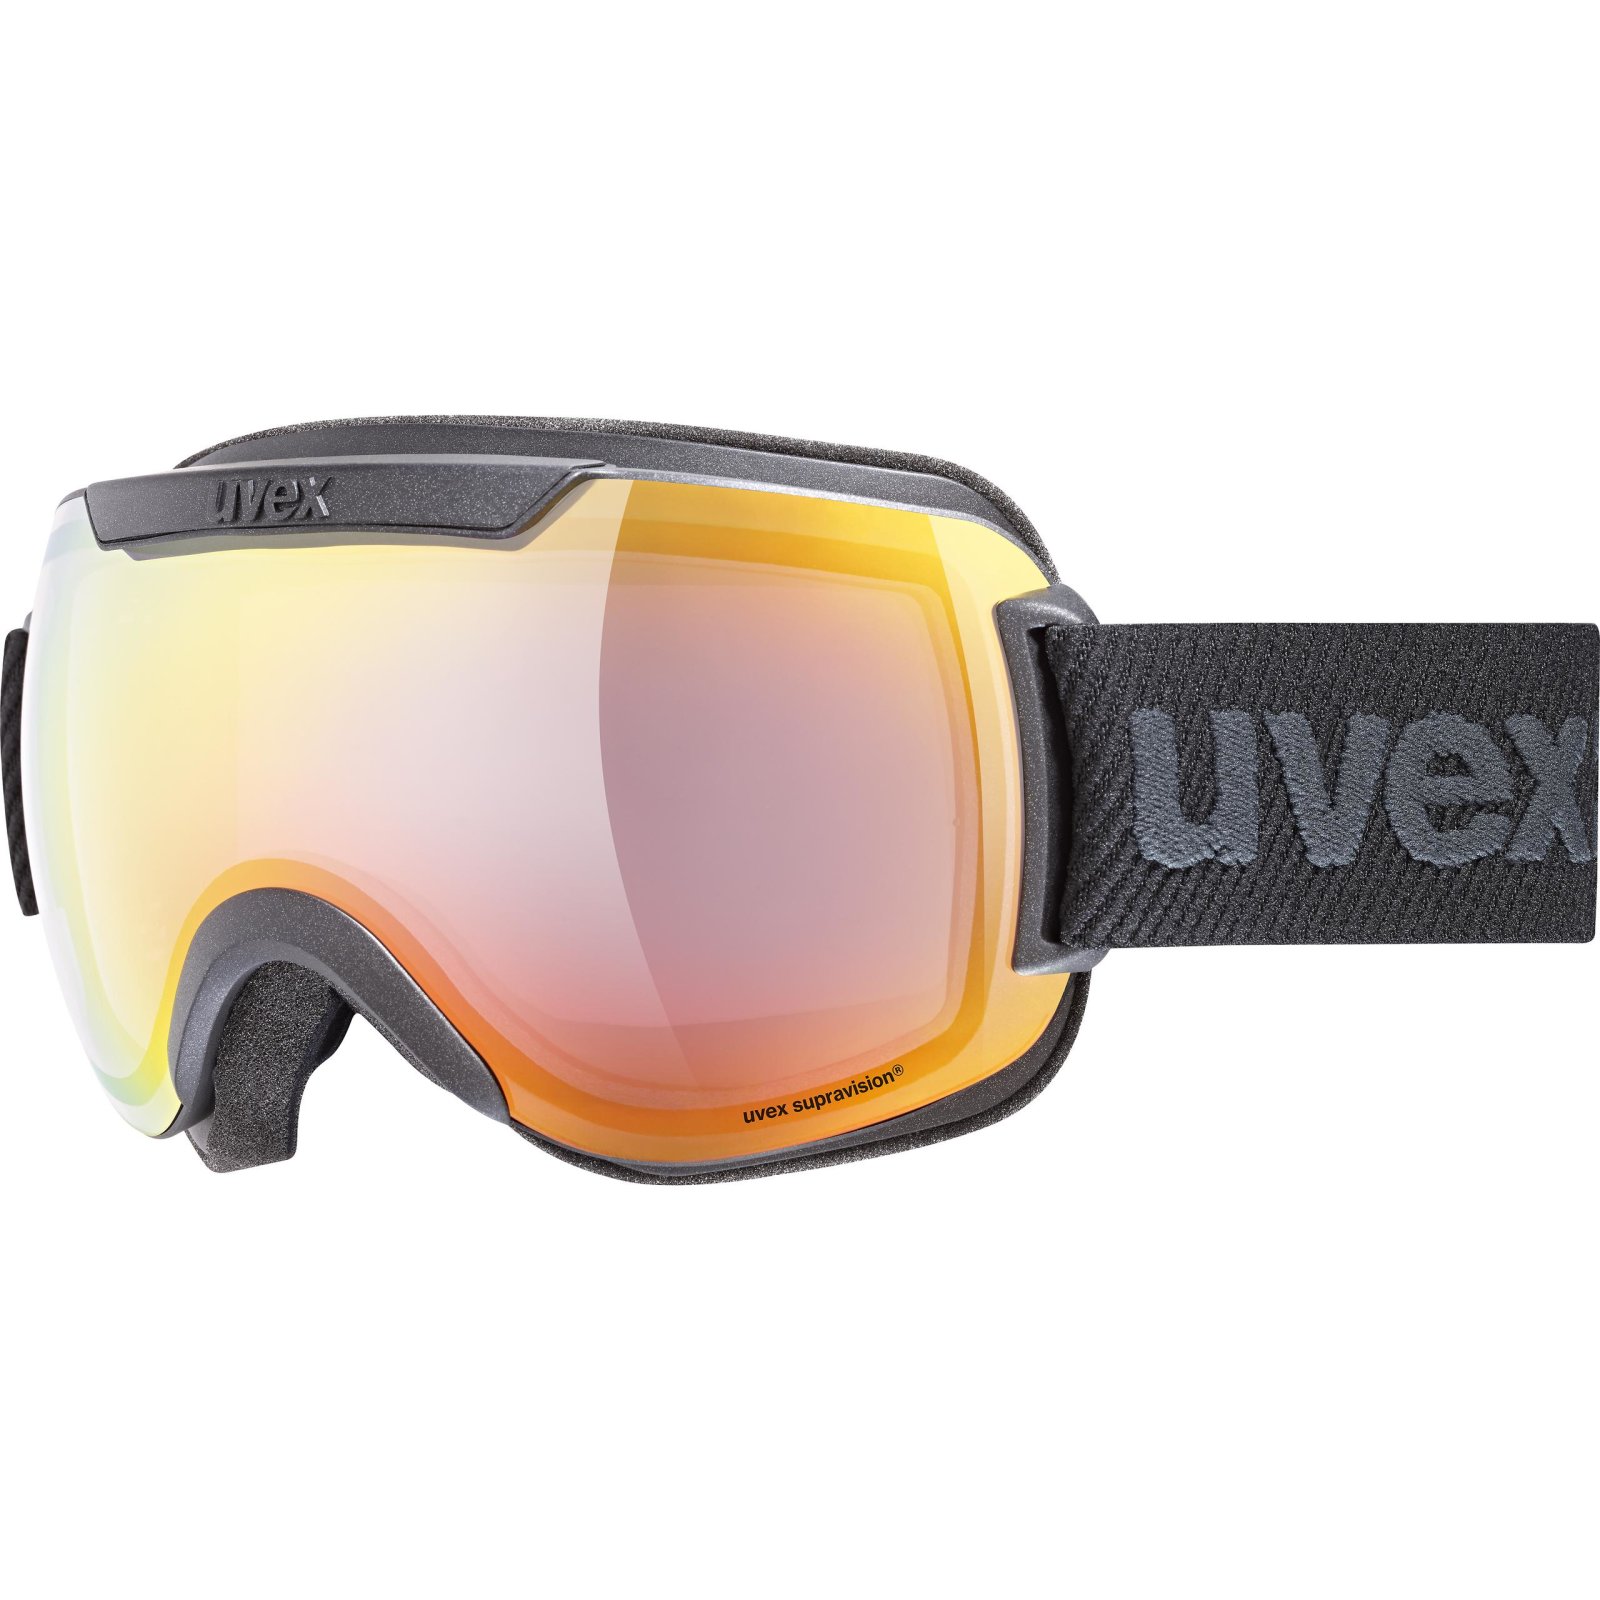 Ski goggles UVEX downhill 2000 FM 20/21